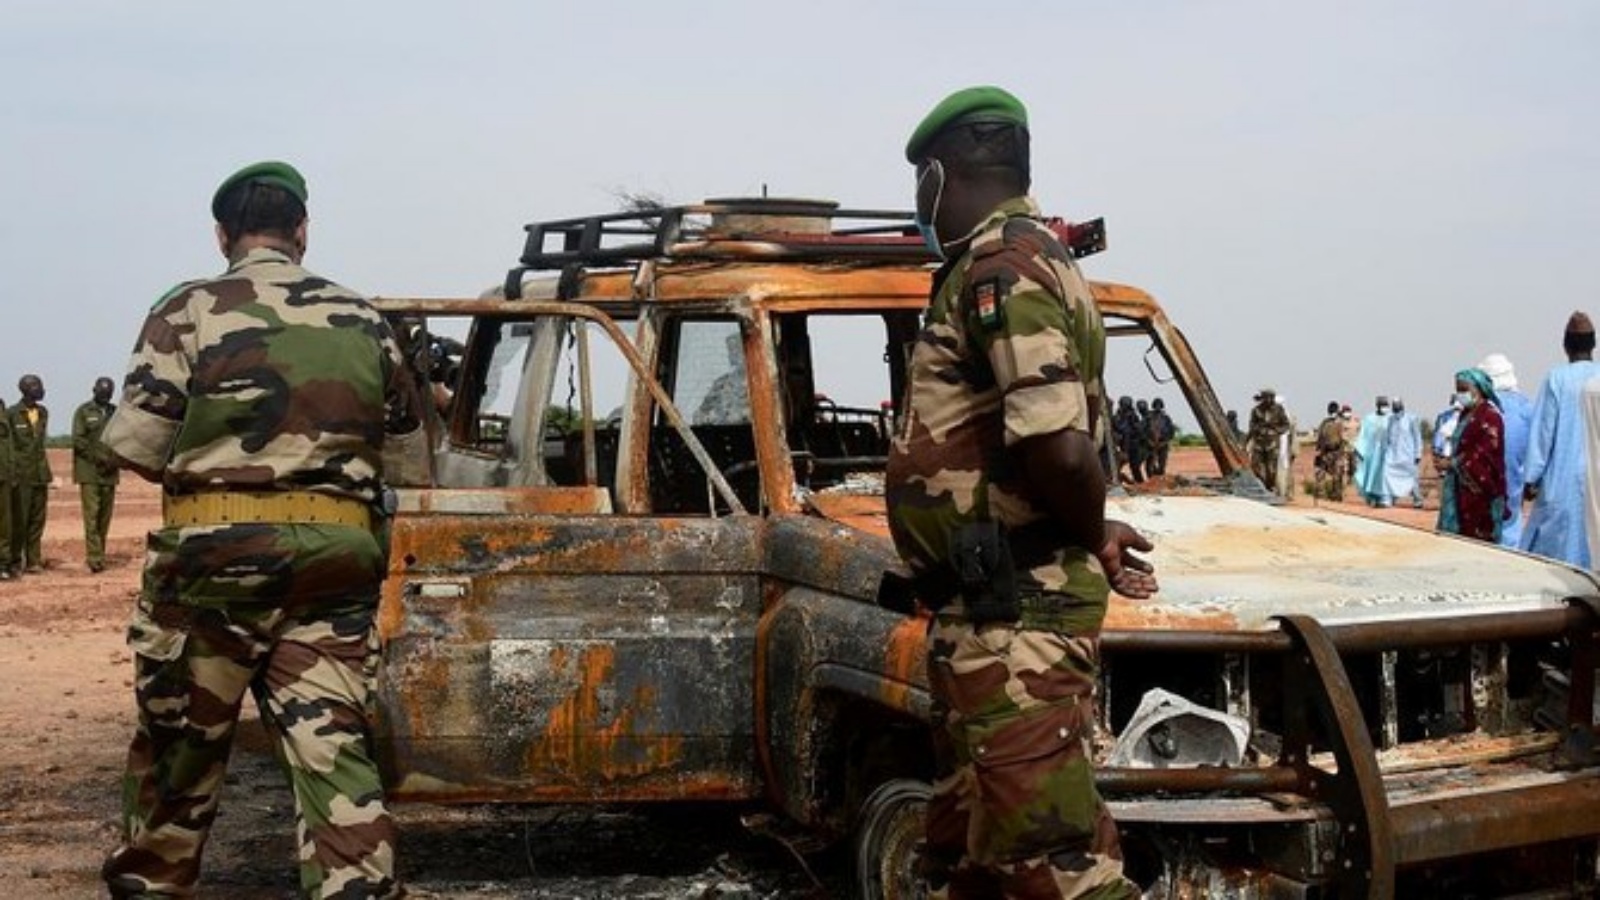 ضباط الجيش النيجيري يتفقدون سيارة تابعة لمنظمة الإغاثة الفرنسية ACTED، بعد هجوم من قبل متطرفين، في محمية كوري، على بعد 60 كم من نيامي. (أرشيفية)